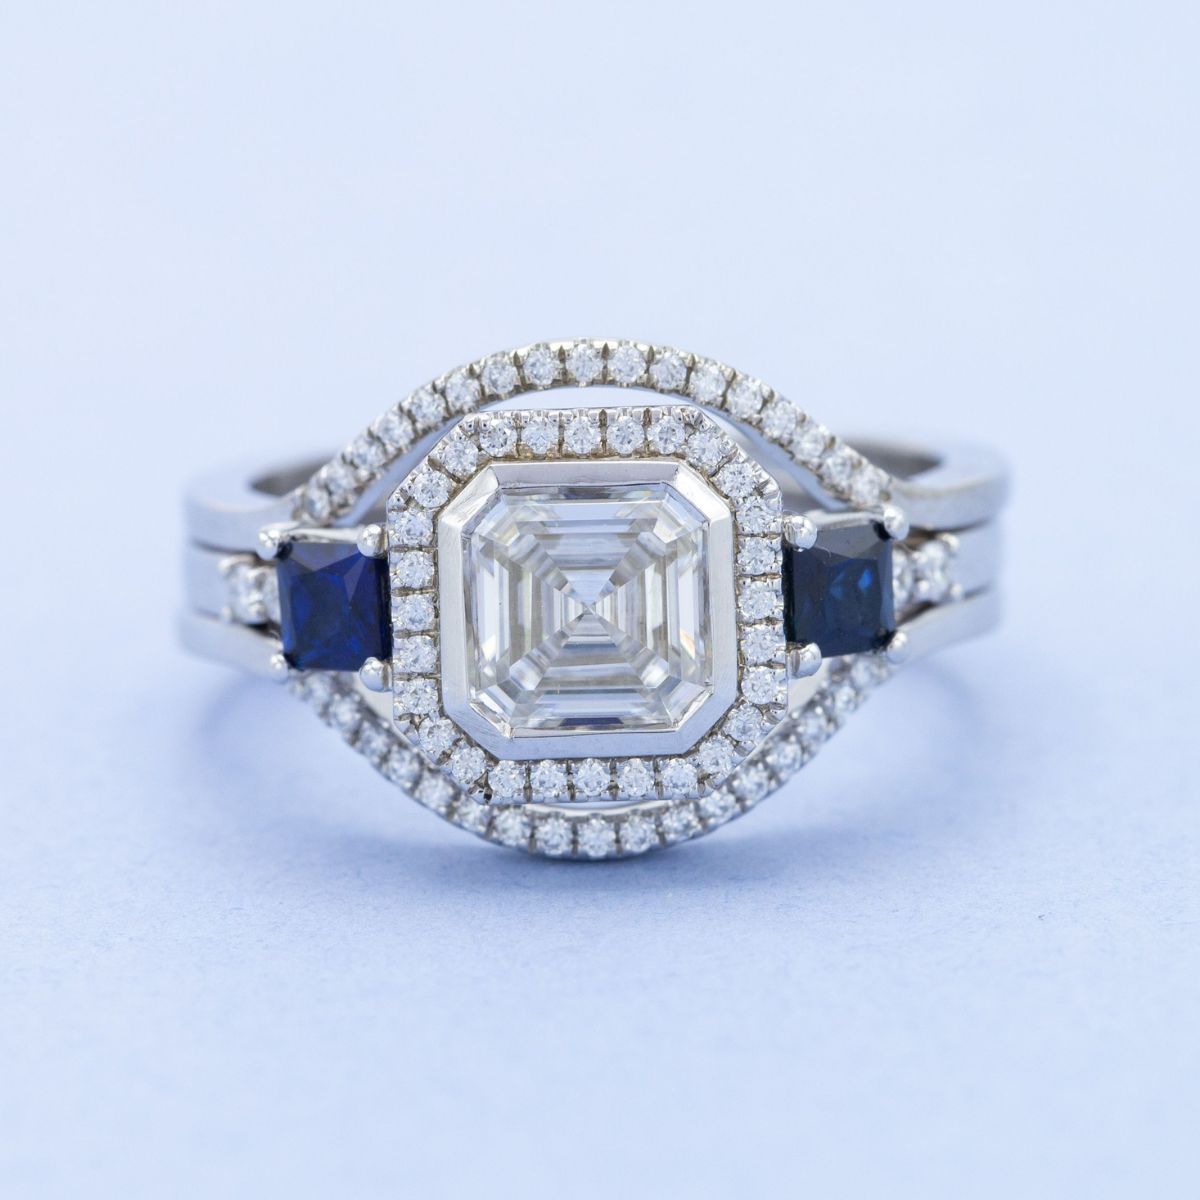 Asscher cut center stone engagement ring designs | CustomMade.com